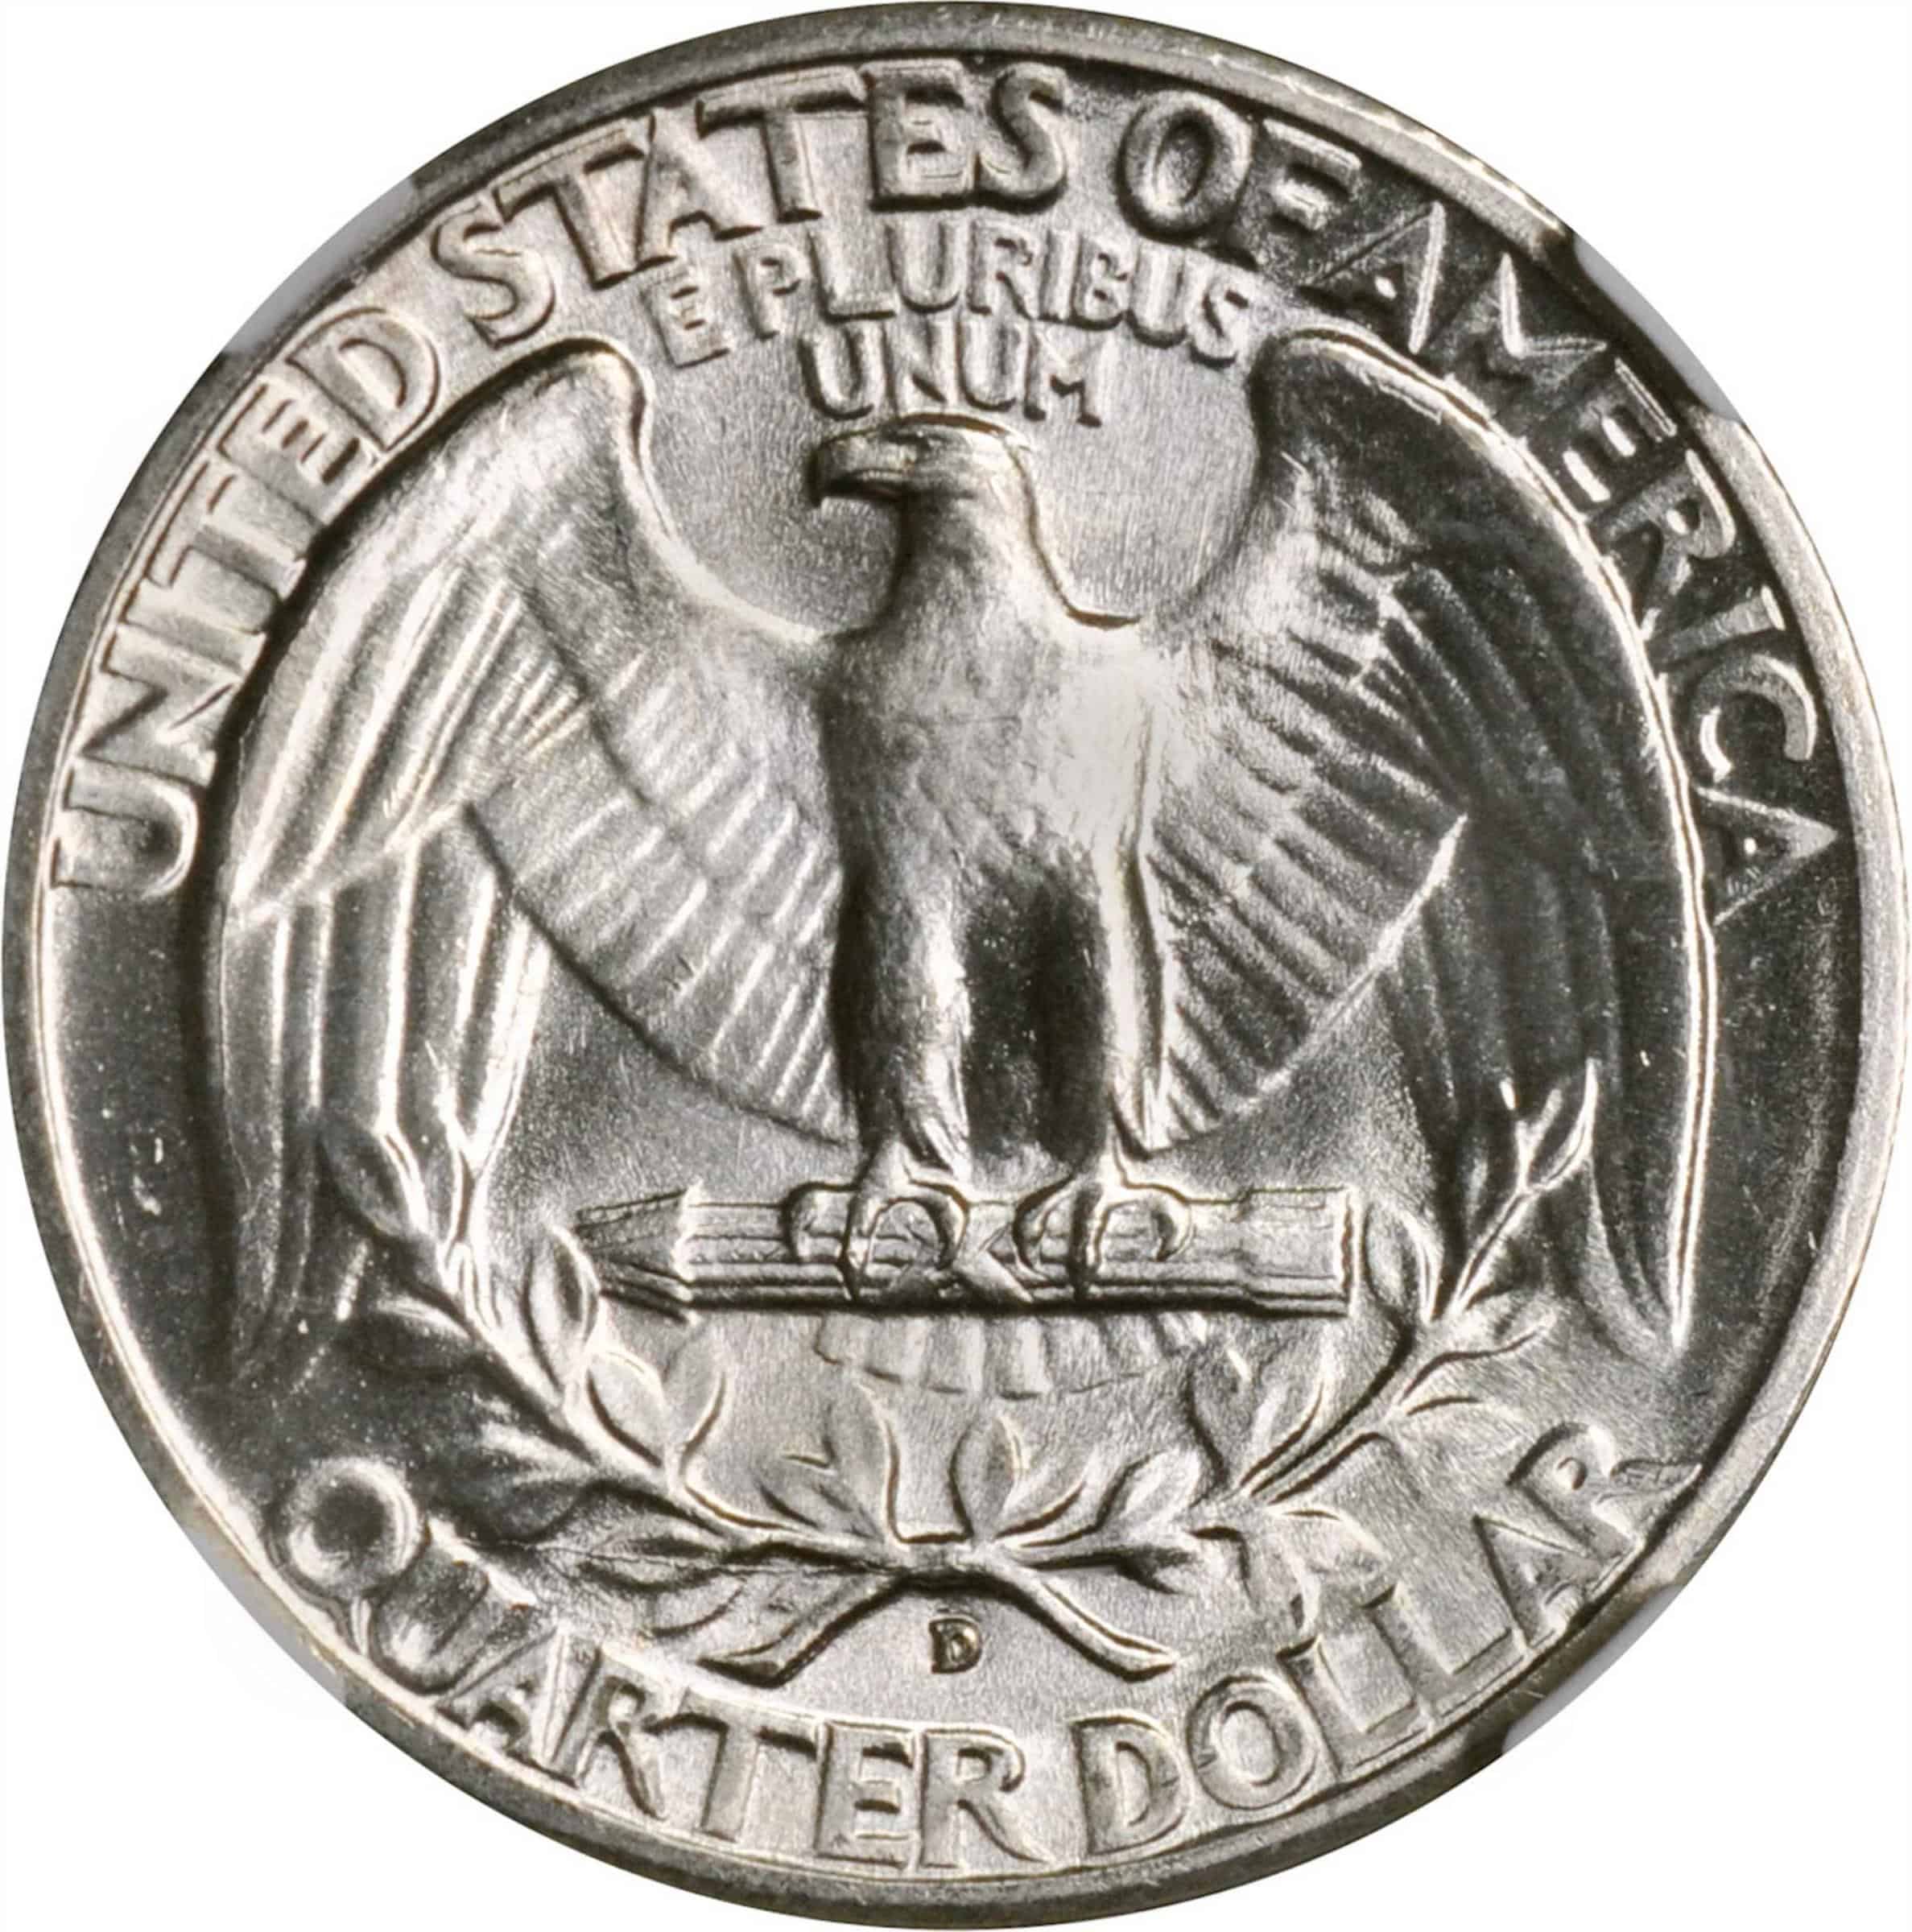 The 1943 Washington quarter reverse